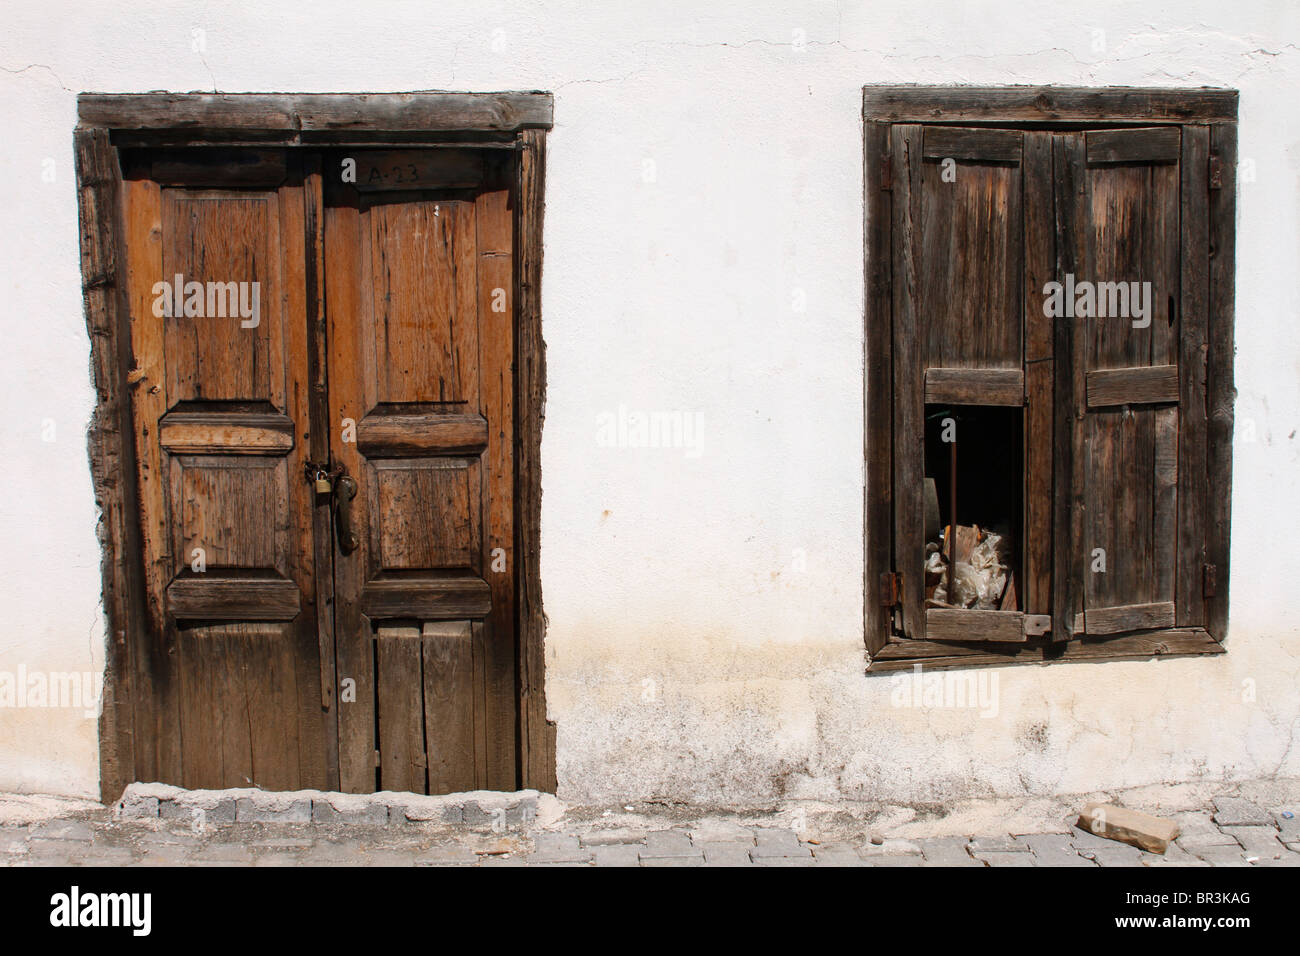 Vieille porte en bois et volets roulants, Dirgenler, Turquie Banque D'Images